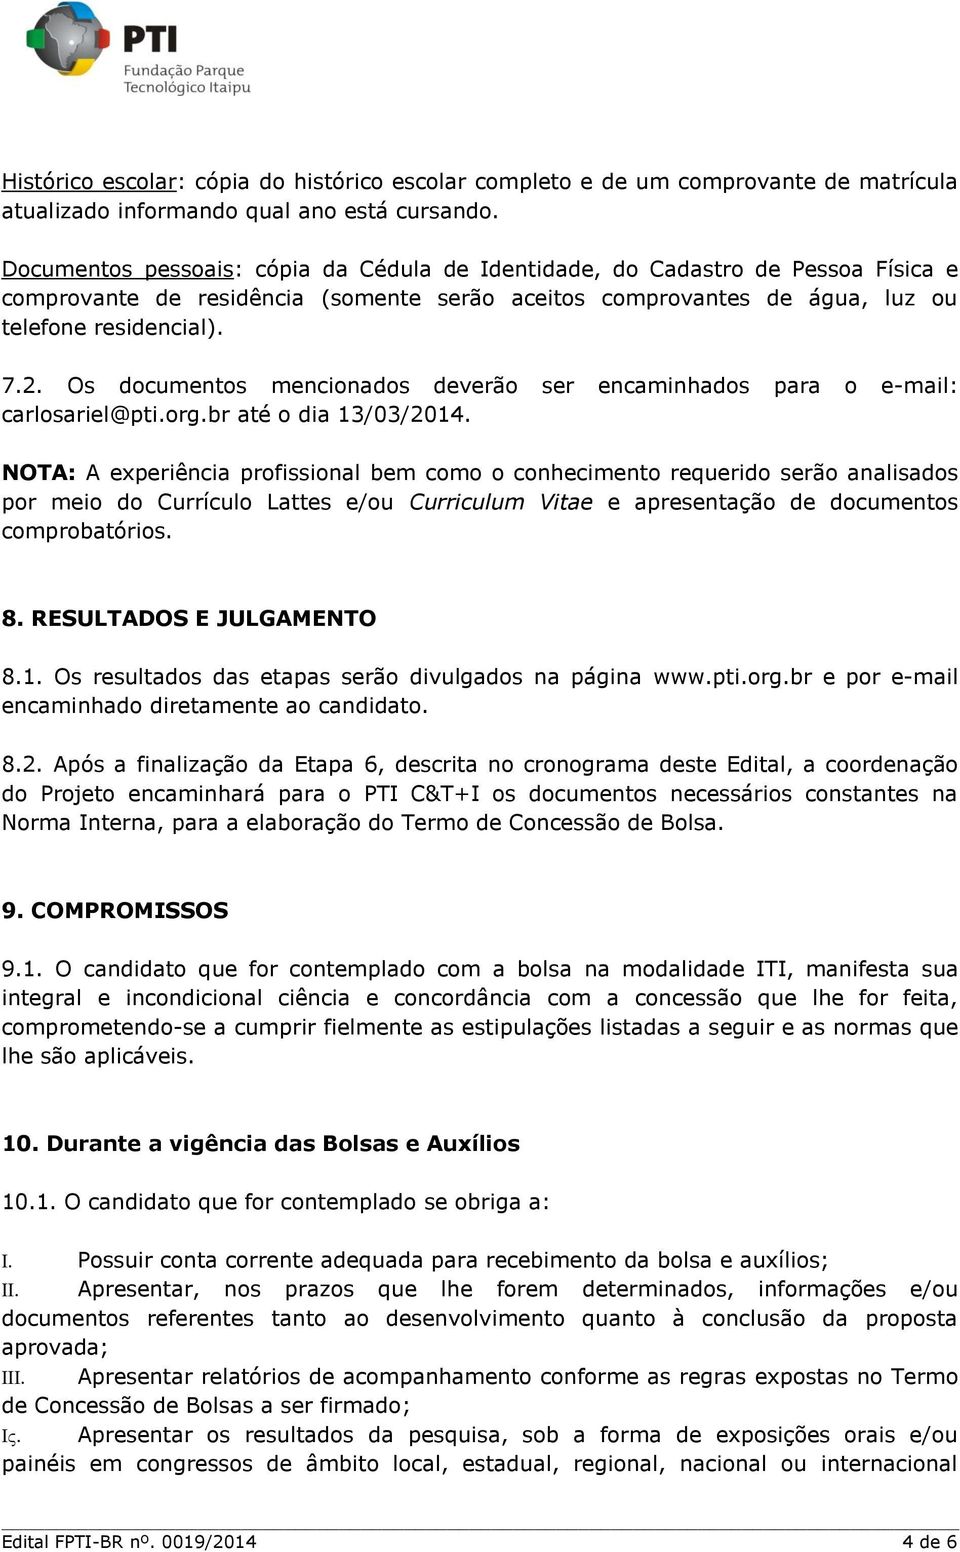 Os documentos mencionados deverão ser encaminhados para o e-mail: carlosariel@pti.org.br até o dia 13/03/2014.